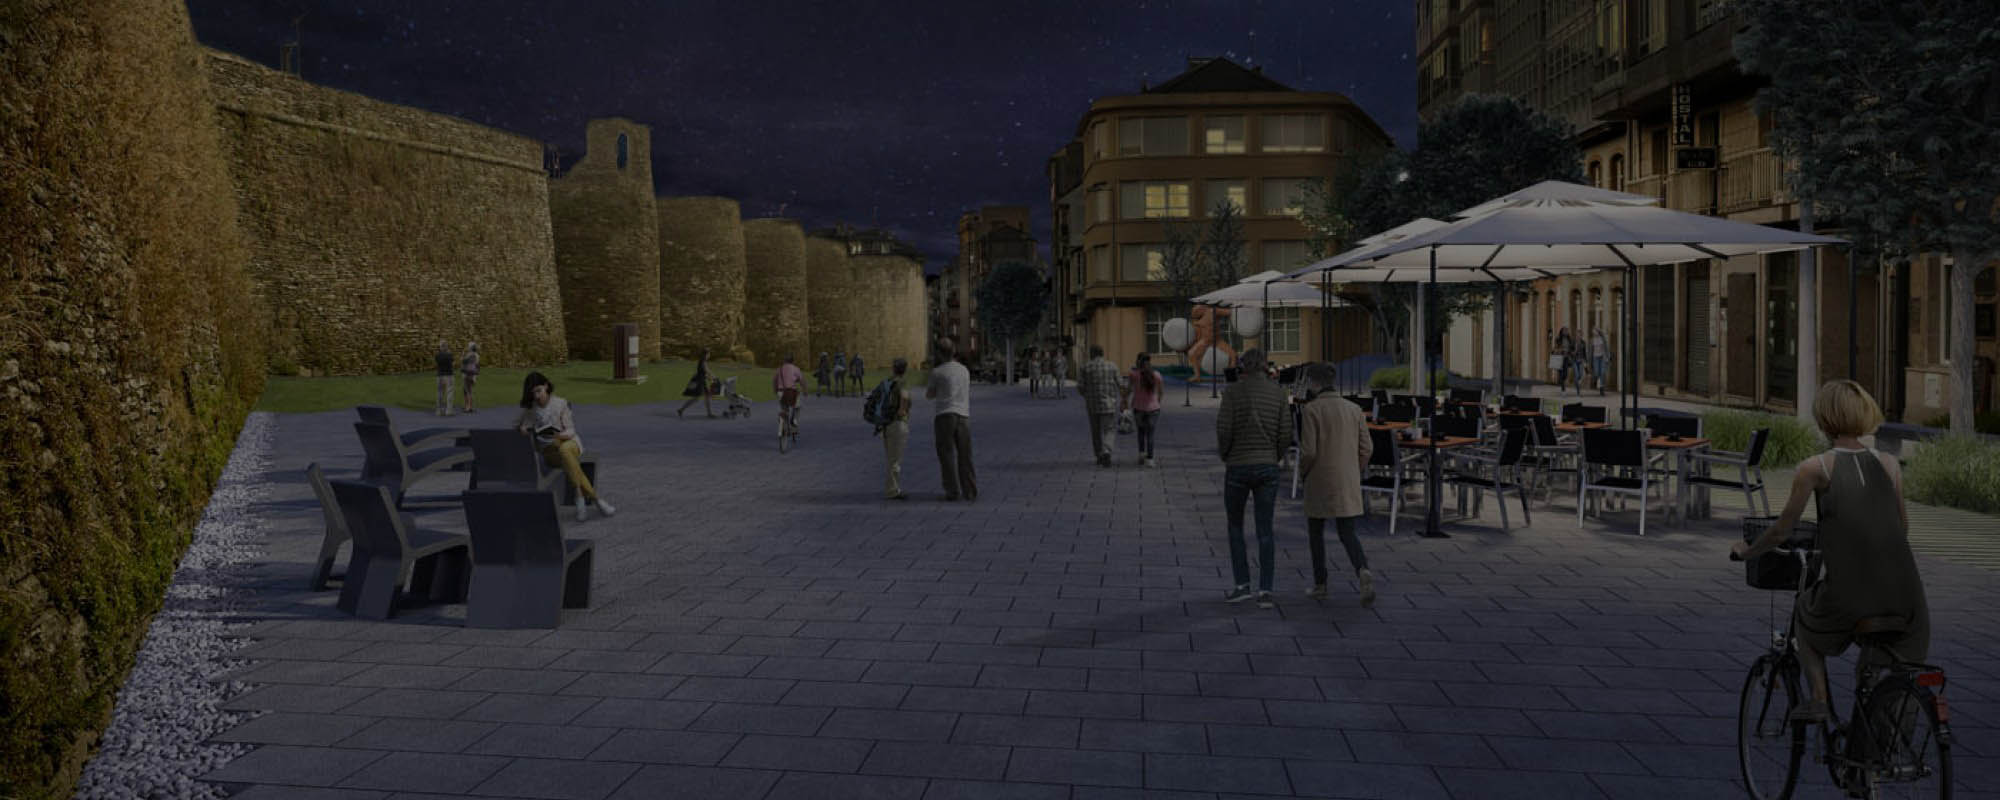 Renders 3D peatonalización A Mosqueira, tramo de la Muralla en Lugo